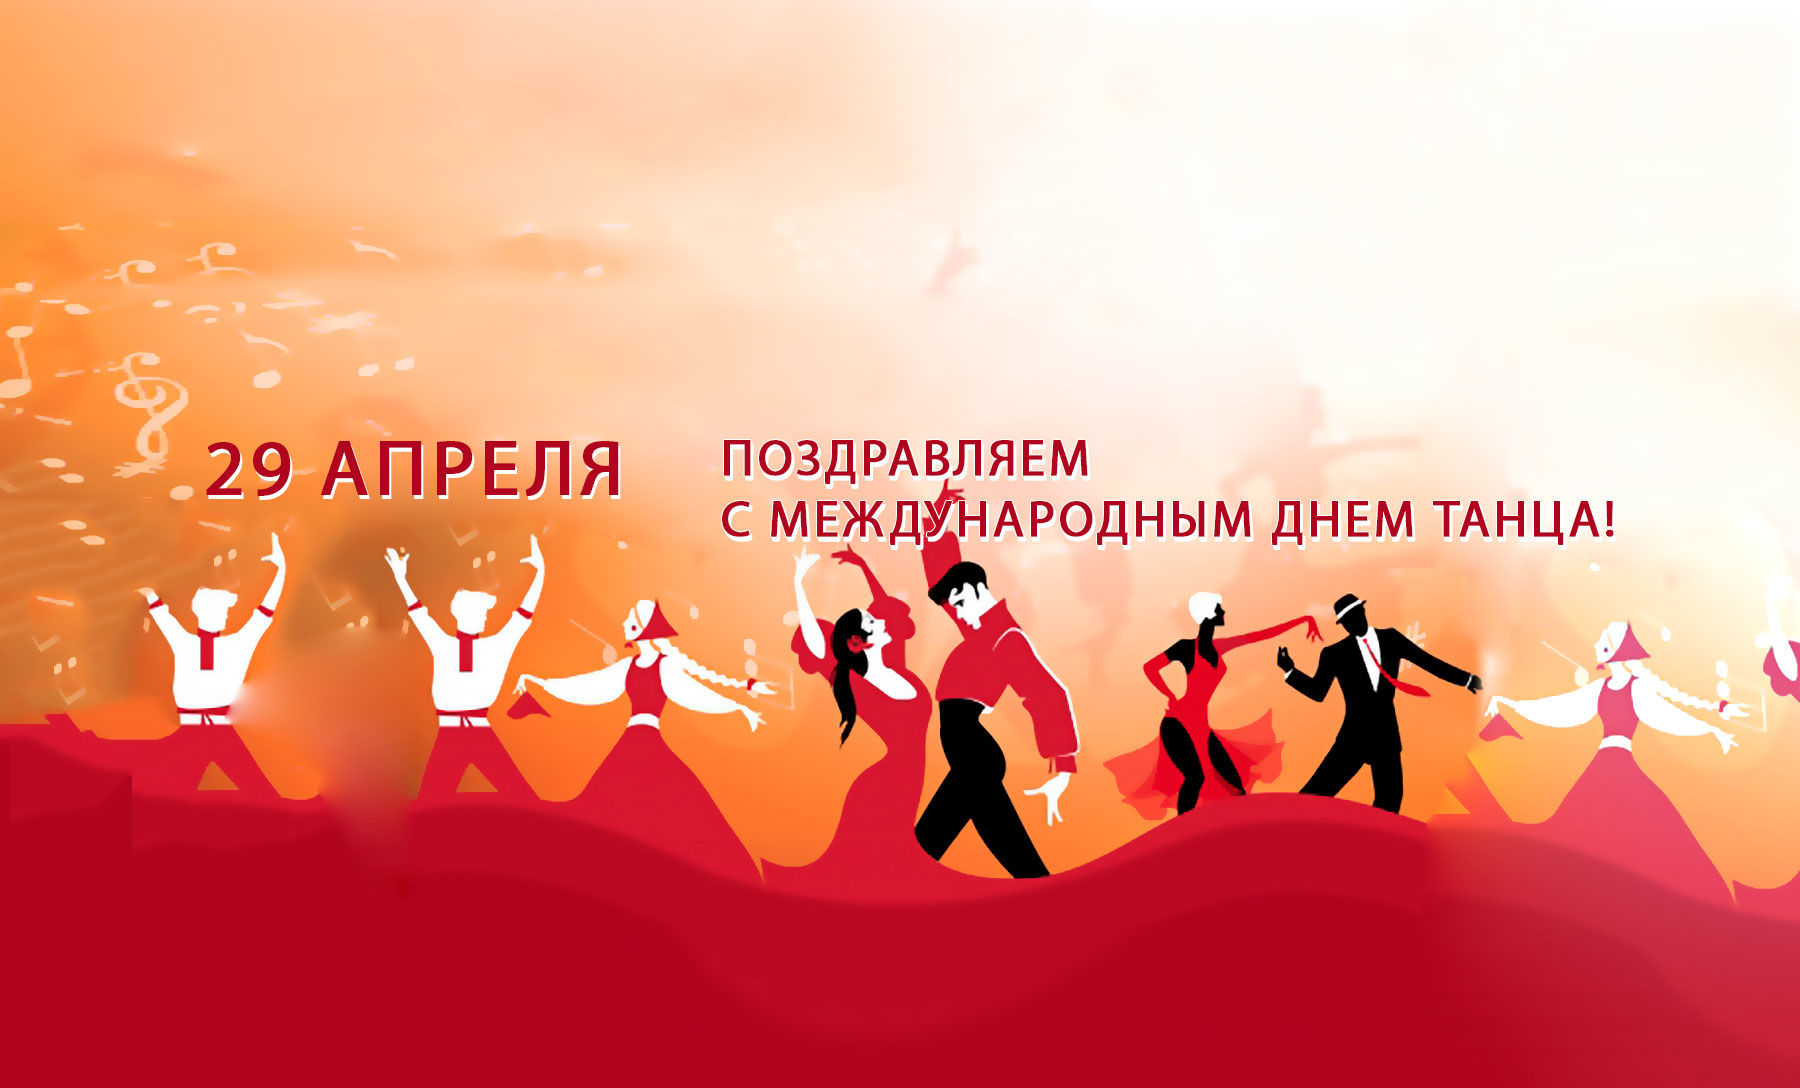 Международный день танца  празднуется во всем мире 29 апреля